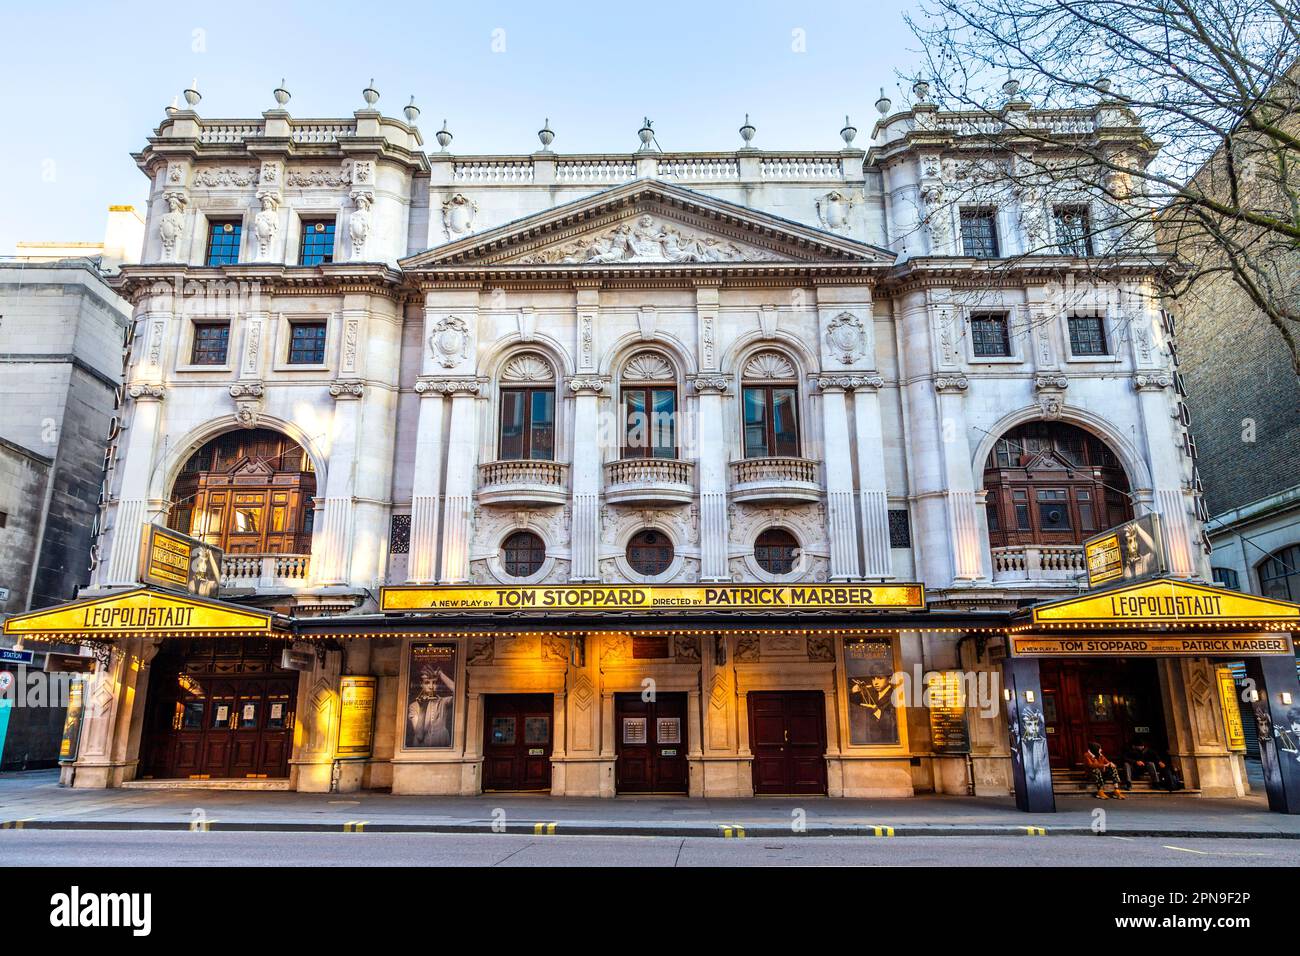 Esterno del Wyndham's Theatre nel West End suonando Leopoldstadt, Londra, Inghilterra, Regno Unito Foto Stock